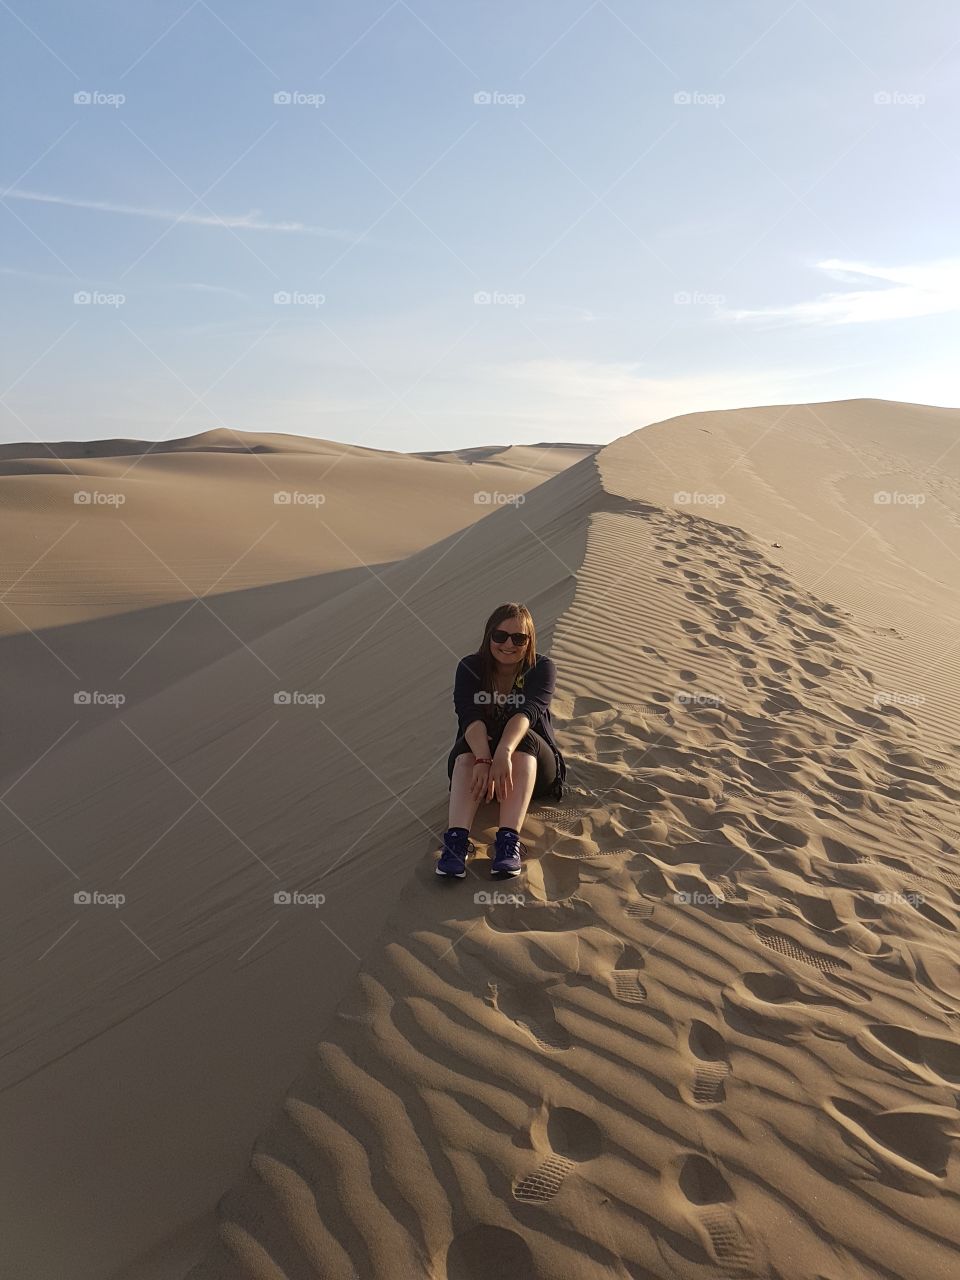 Girl in a desert